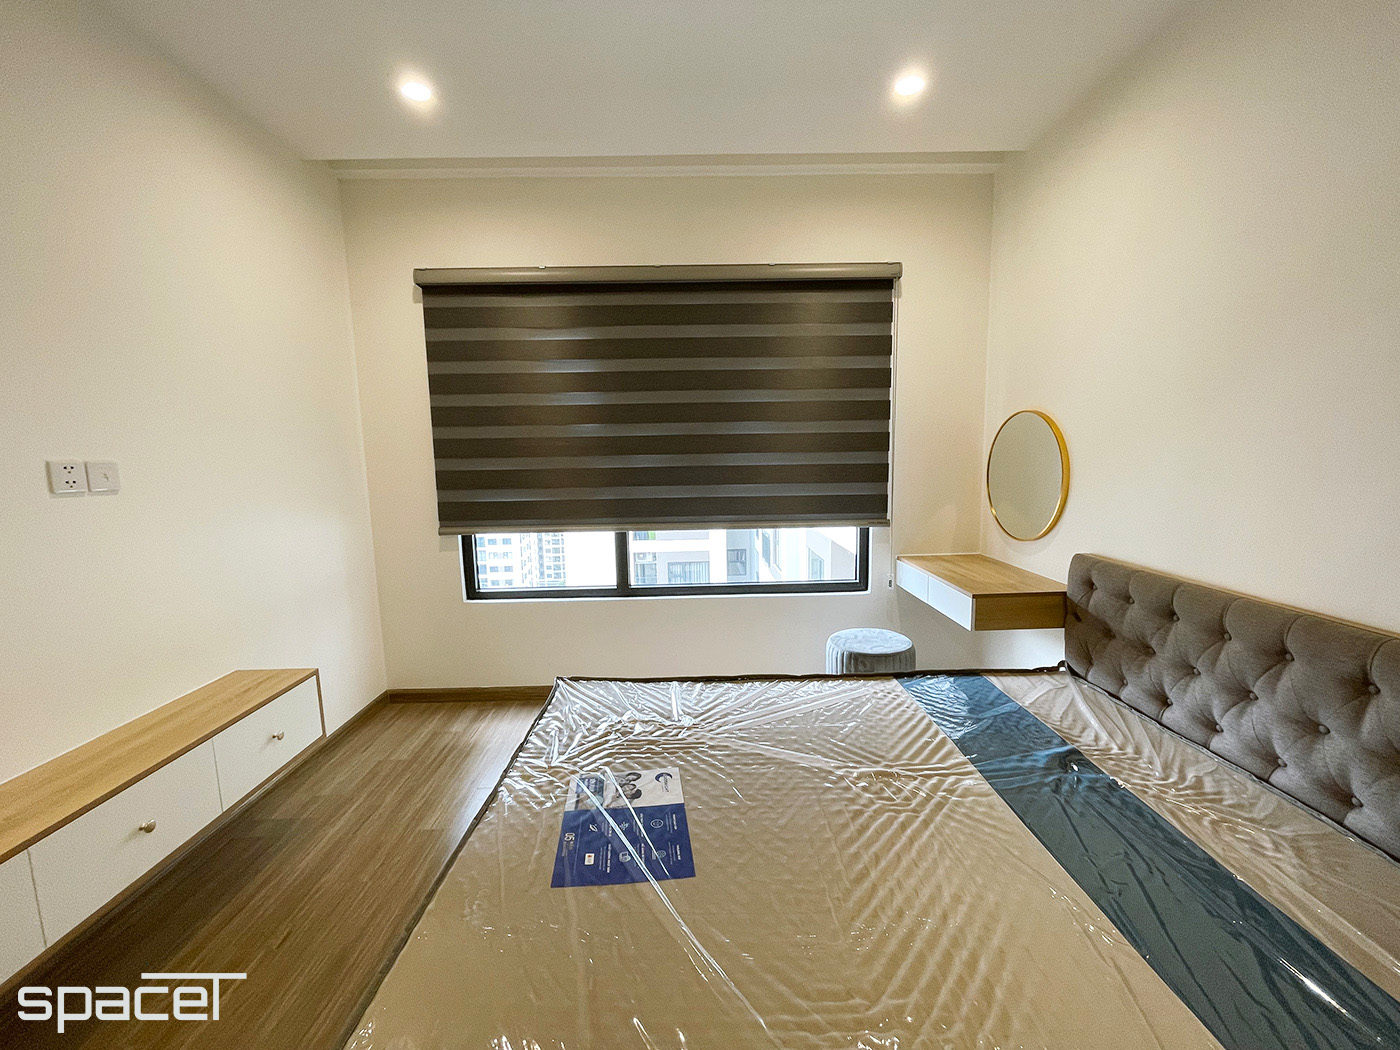 Phòng ngủ, phong cách hiện đại Modern, hoàn thiện nội thất, căn hộ The Origami Vinhomes